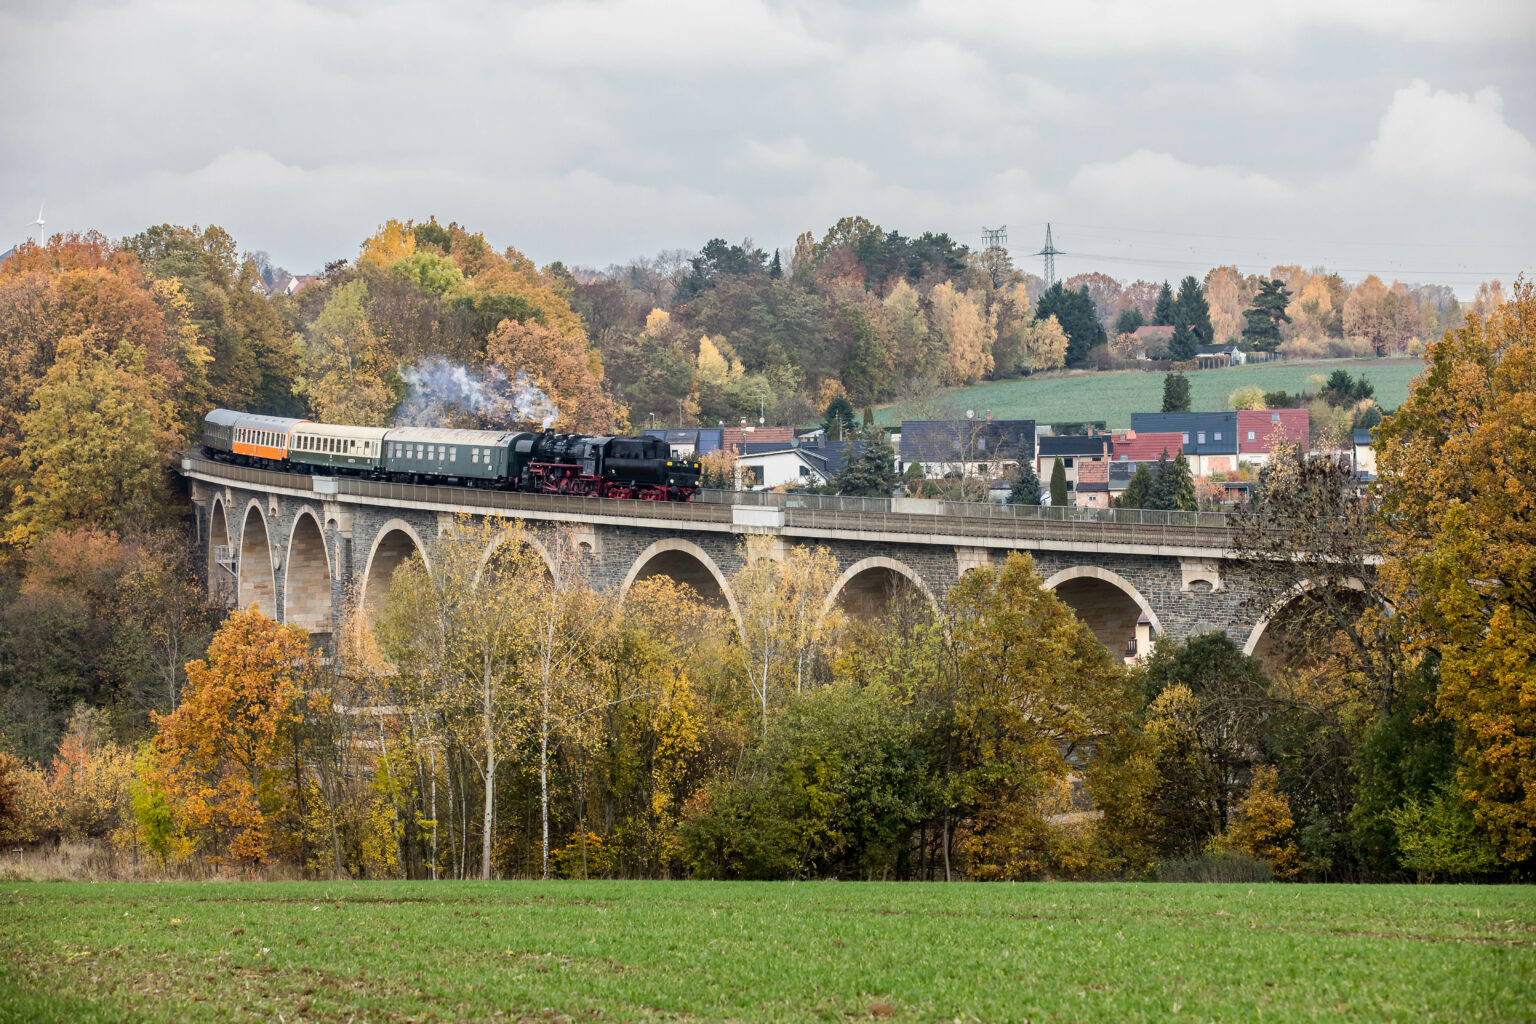 Das Bild zeigt den Zug des Eisenbahnmuseums Leipzig auf dem Bahrebachmühlenviadukt bei Chemnitz. Die Dampflokomotive hängt mit dem Tender voran am Zug. Der Natursteinviadukt ist von herbstlichen Bäumen umgeben.